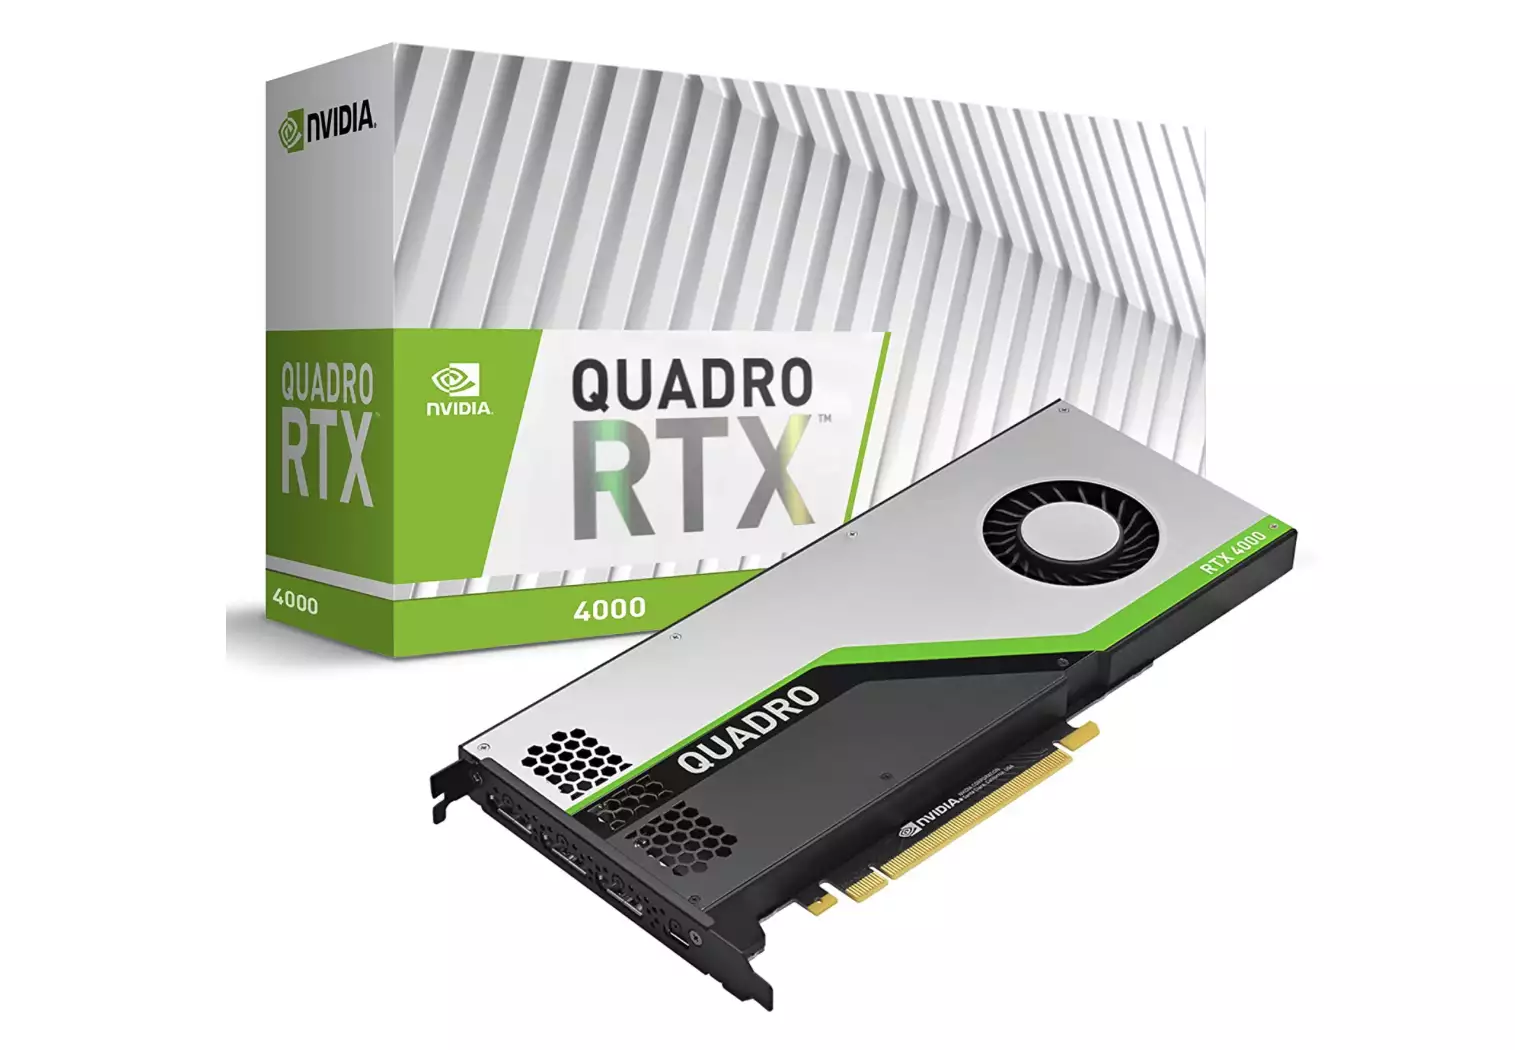 migliori schede video: Nvidia Quadro RTX 4000